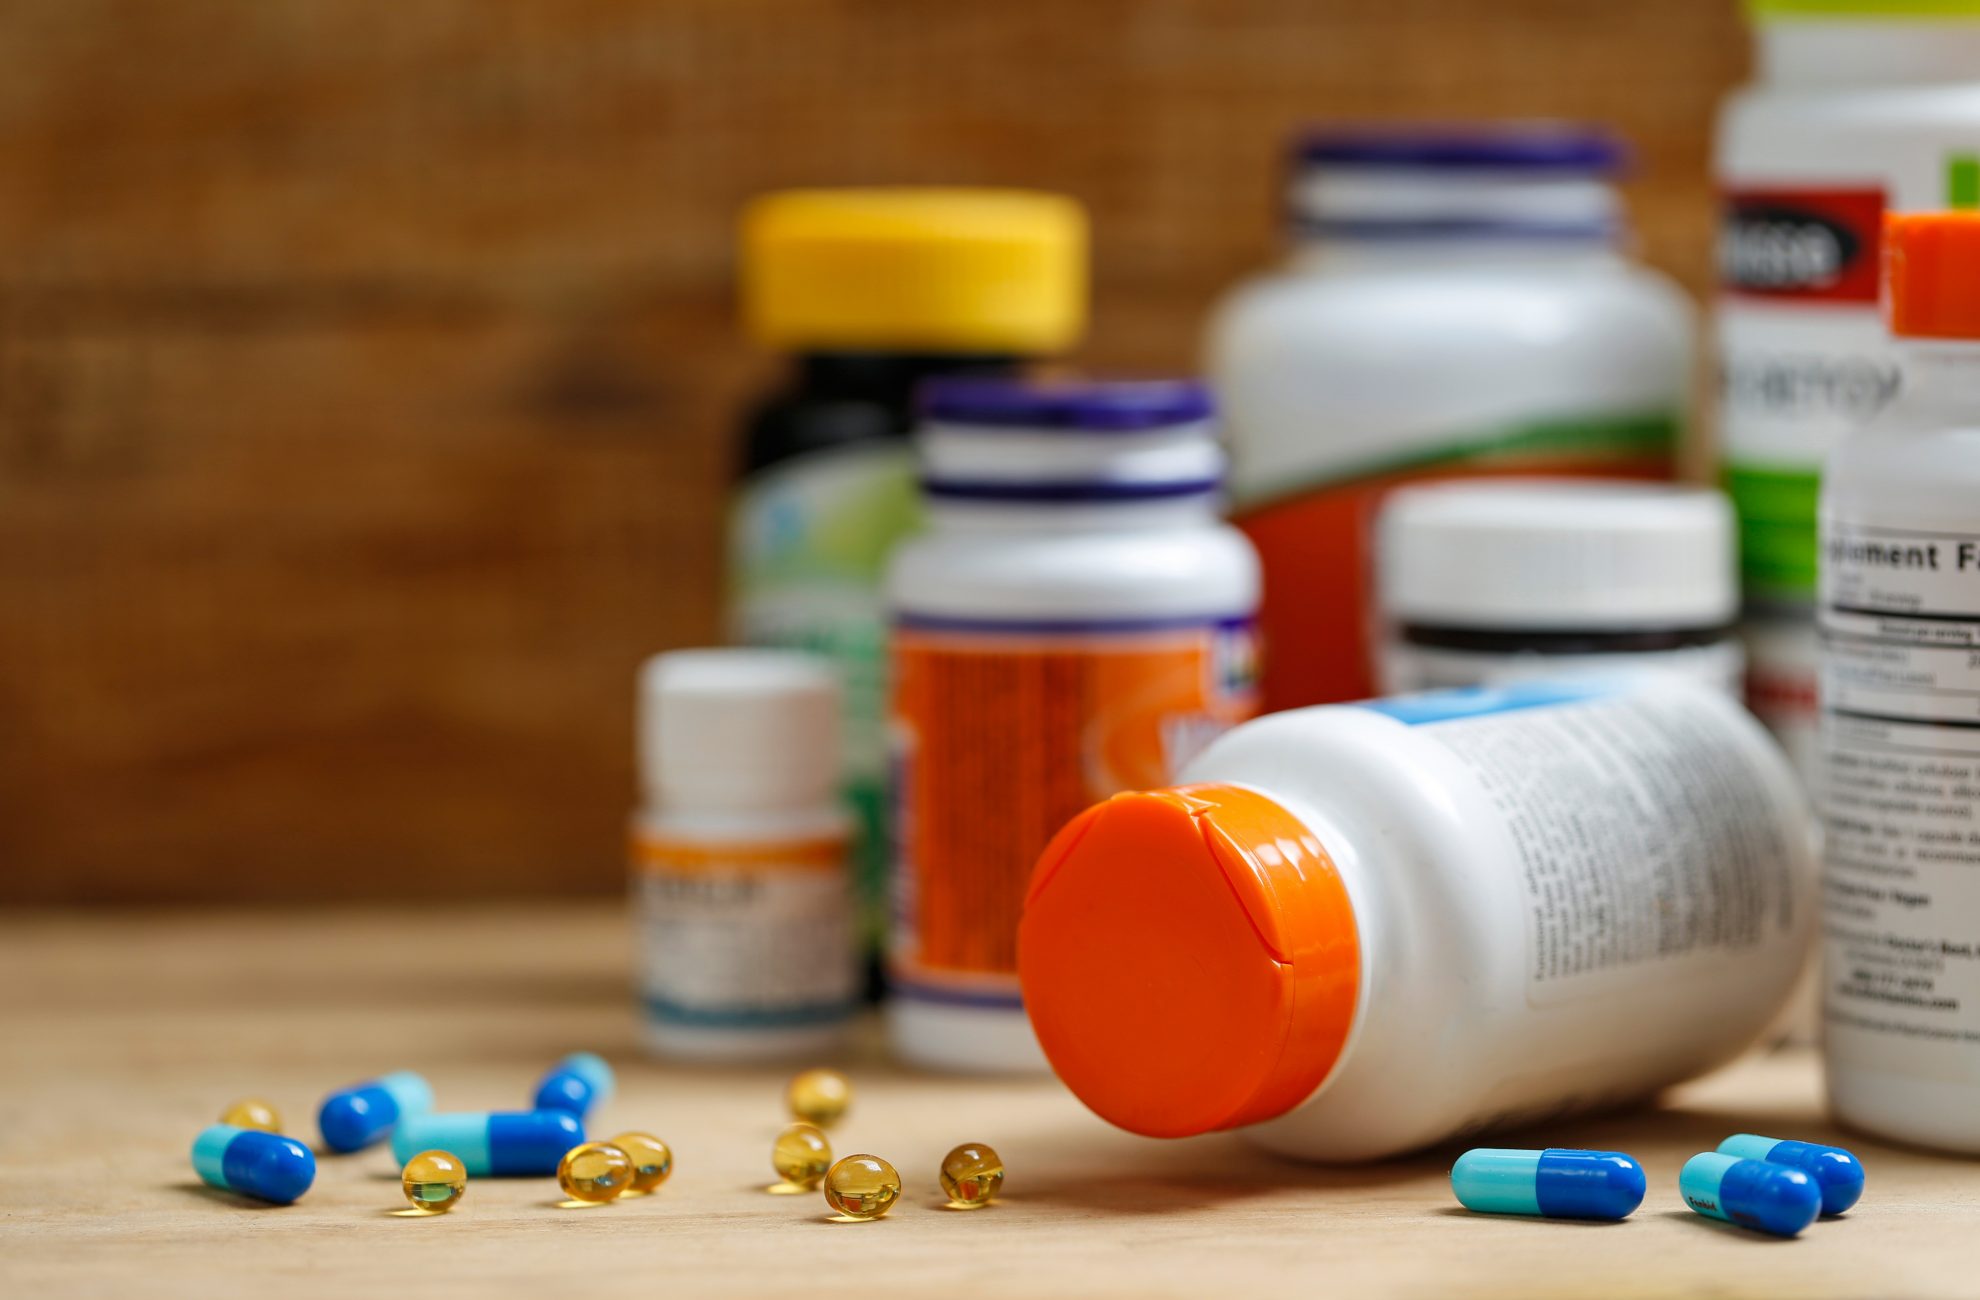 Nuo sausio 1 dienos bus leidžiama tam tikrus nereceptinius vaistus parduoti ne tik vaistinėse, bet ir kitose mažmeninės prekybos vietose, pavyzdžiui, prekybos centruose, parduotuvėse ar degalinėse.